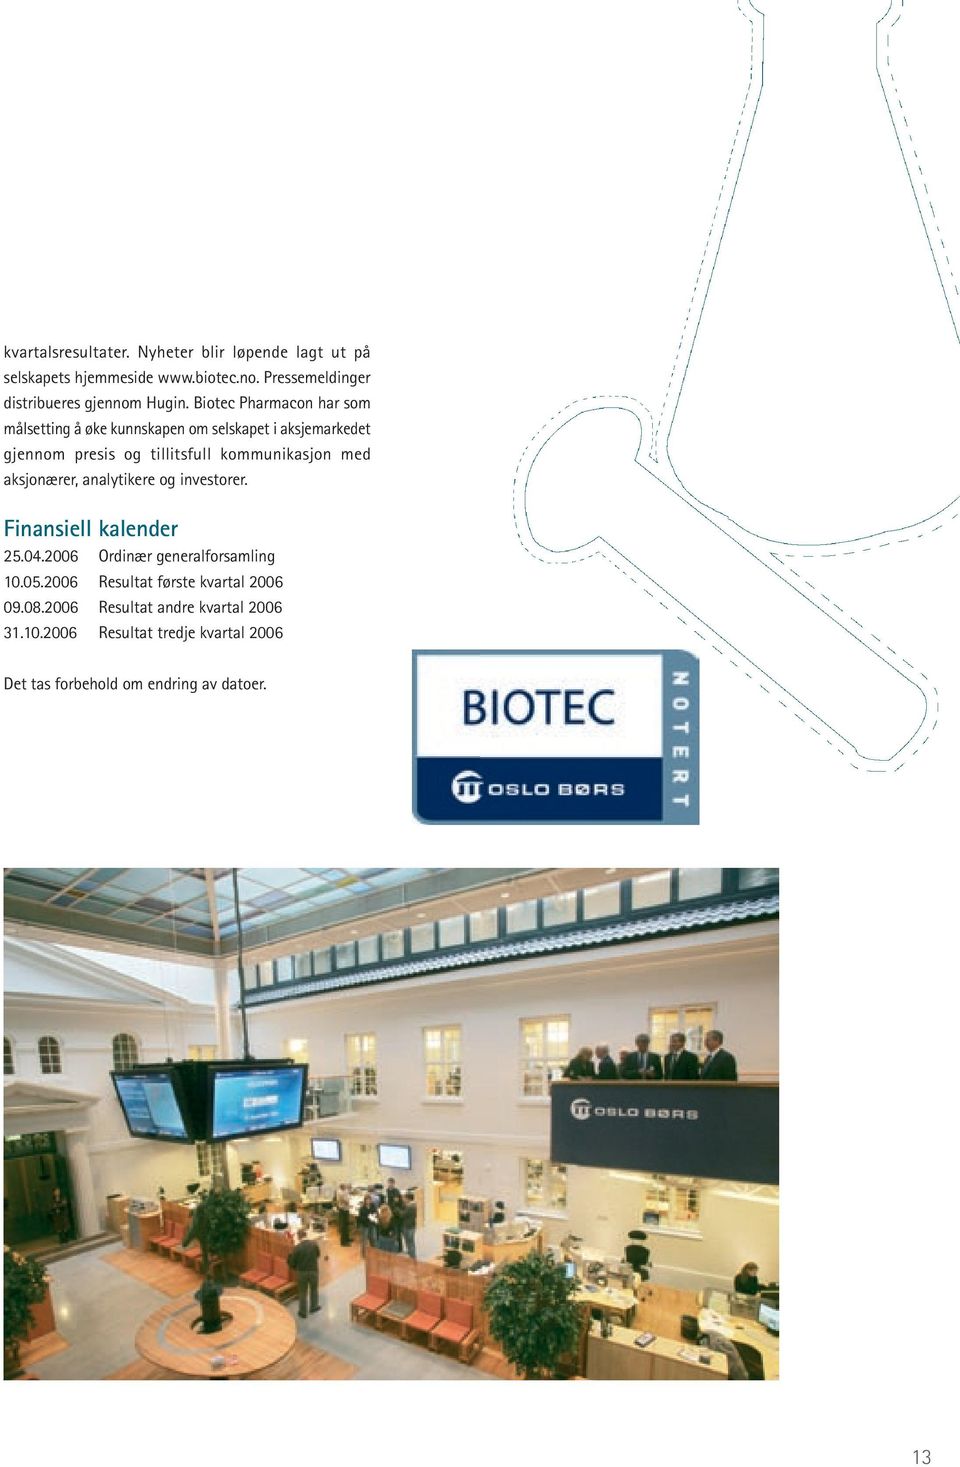 Biotec Pharmacon har som målsetting å øke kunnskapen om selskapet i aksje markedet gjennom presis og tillitsfull kommunikasjon med